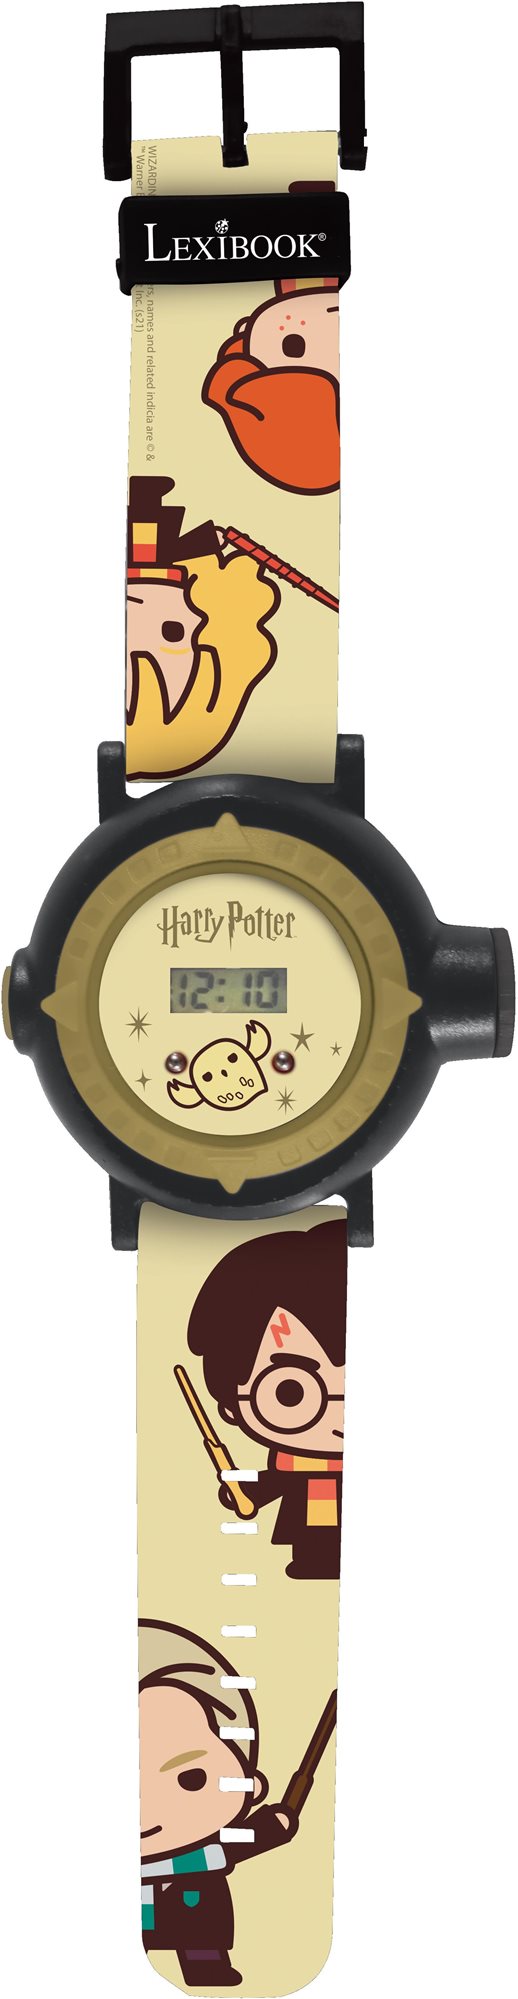 Gyerekóra Lexibook Digitális vetítőóra 20 kivetíthető képpel - Harry Potter